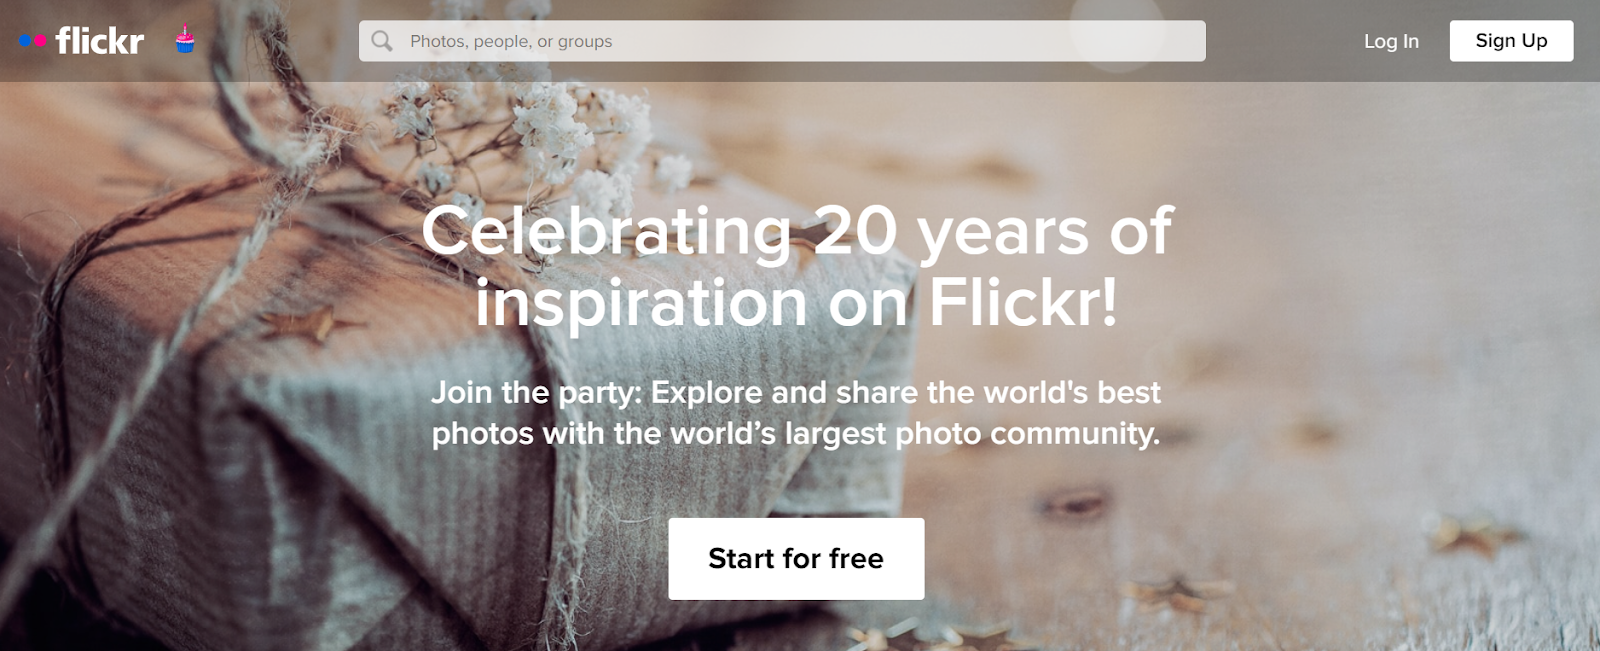 flickr.com interface